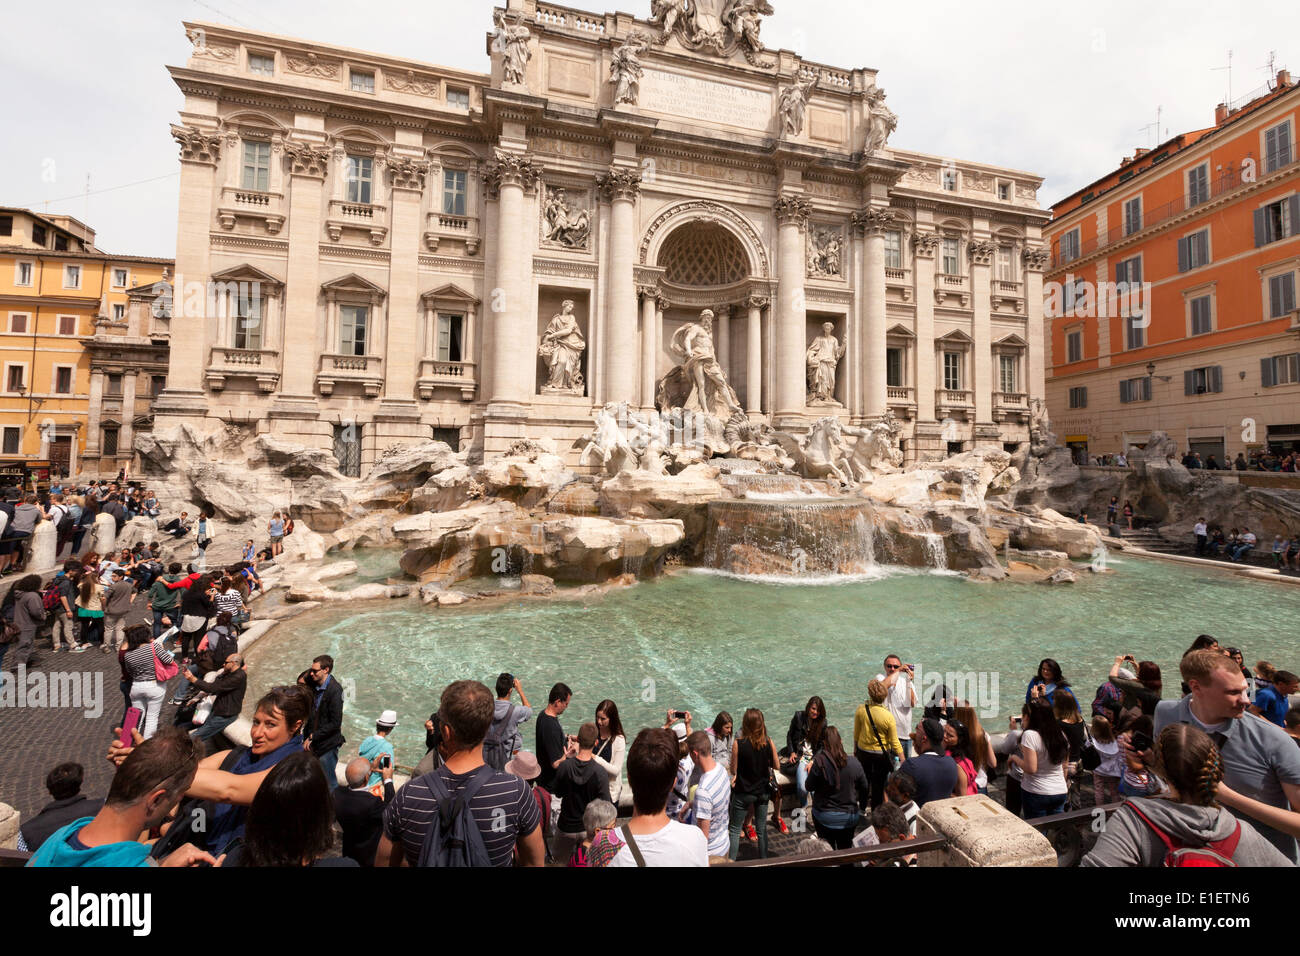 Les personnes prenant des photos à la fontaine de Trevi, Rome Italie Europe Banque D'Images